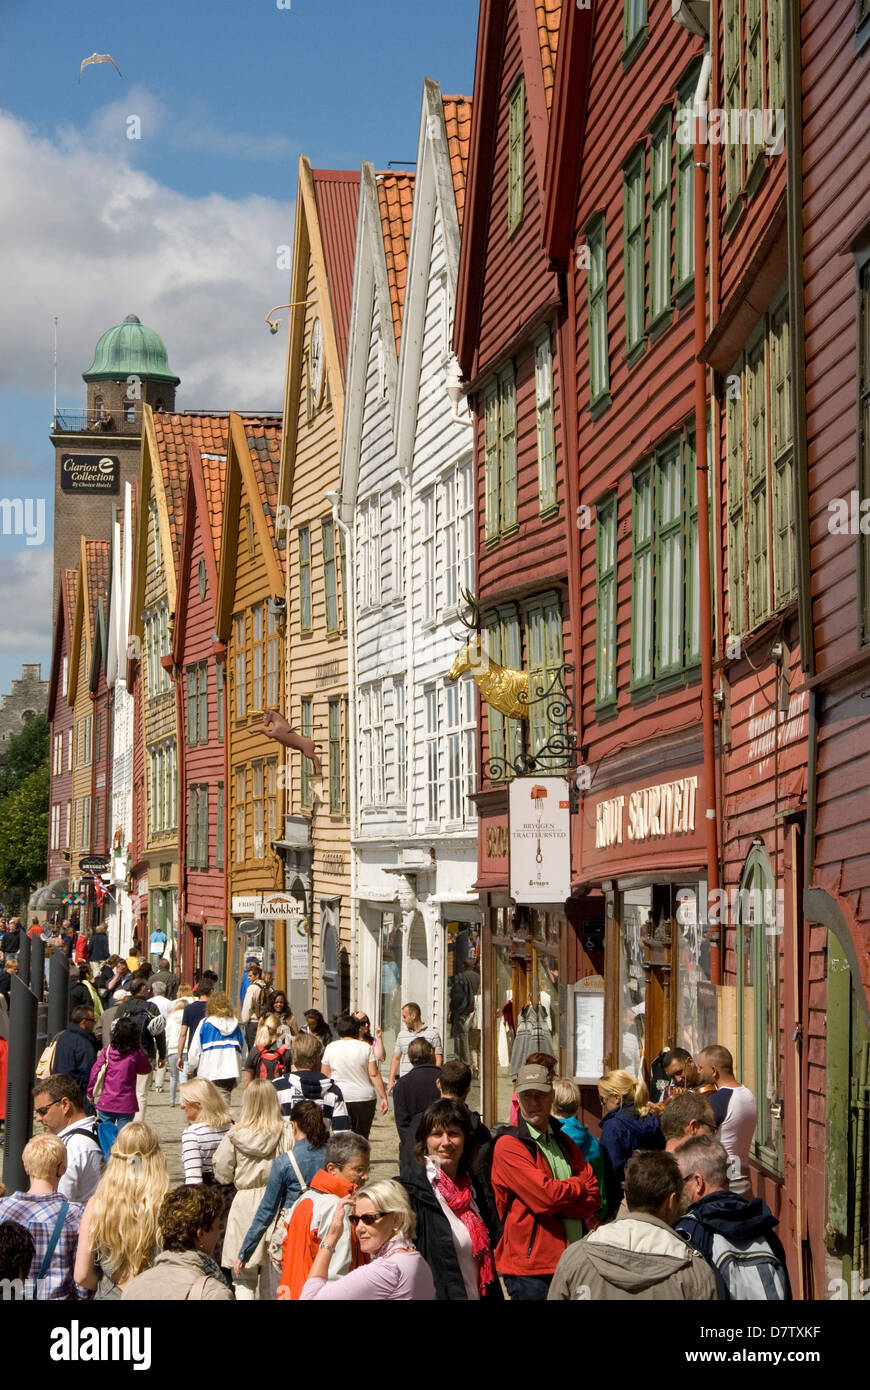 Bryggen waterfront, UNESCO World Heritage Site, Bergen, Norway, Scandinavia Stock Photo